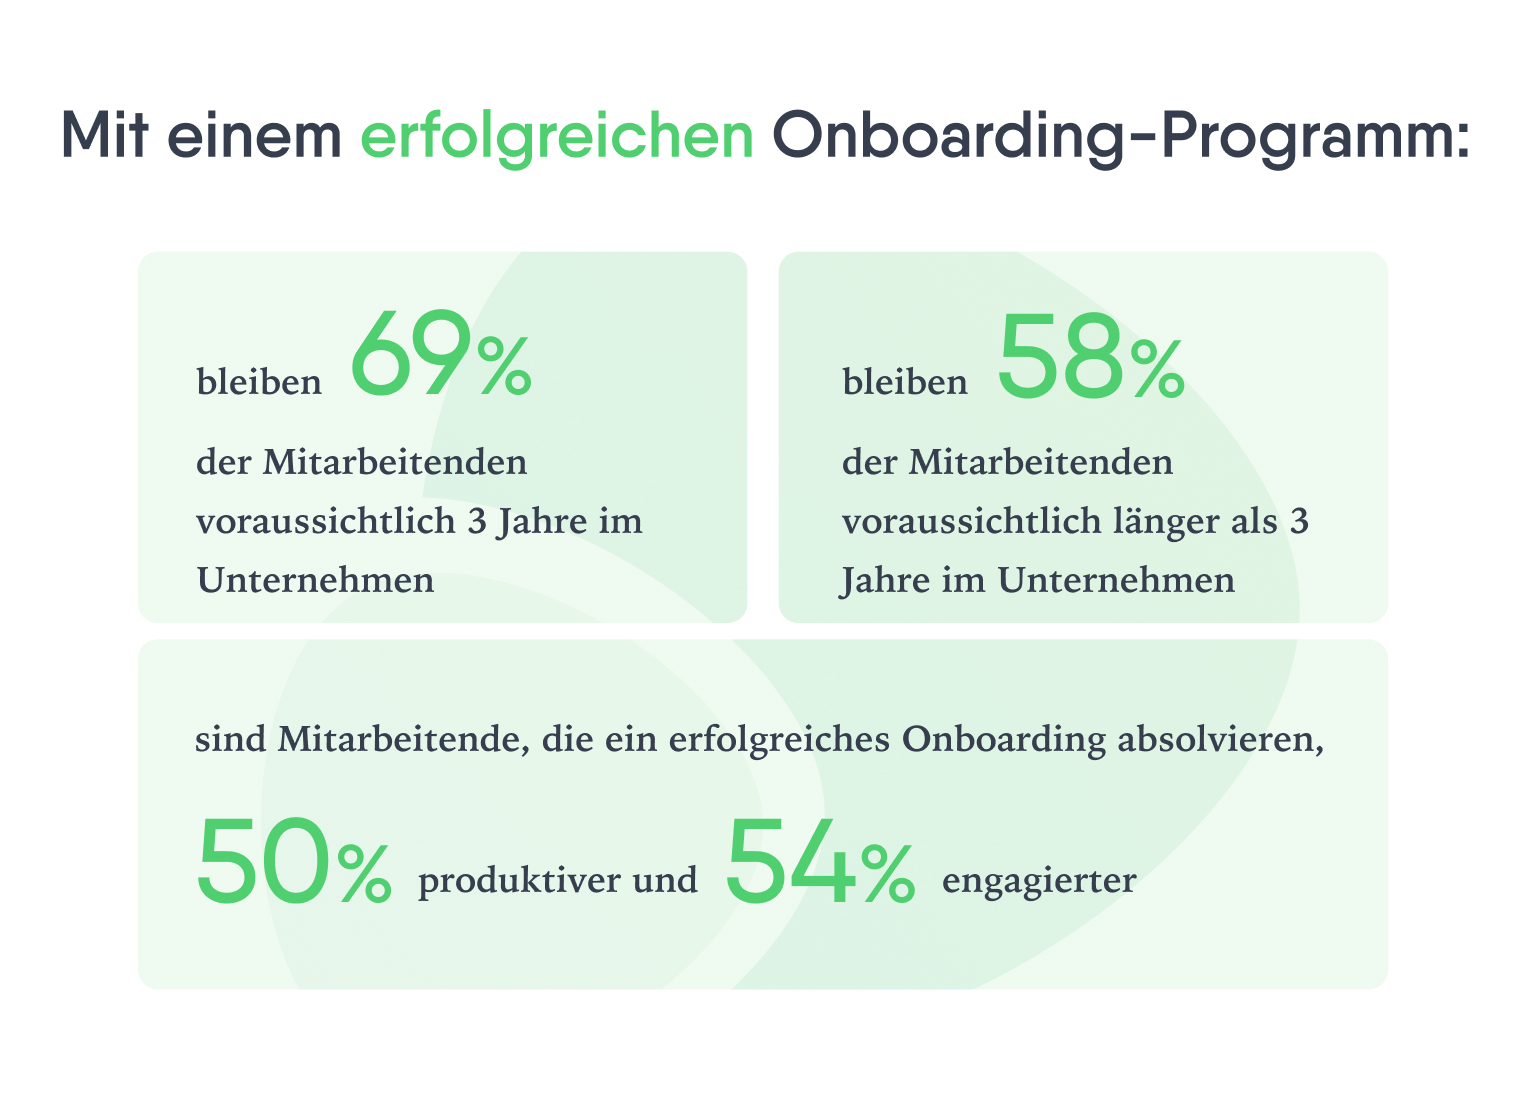 Eine Grafik mit Prozentangaben zur kurz- und langfristigen Mitarbeiterbindung, Produktivität und Engagement von Mitarbeitenden bei gutem Mitarbeiter-Onboarding.